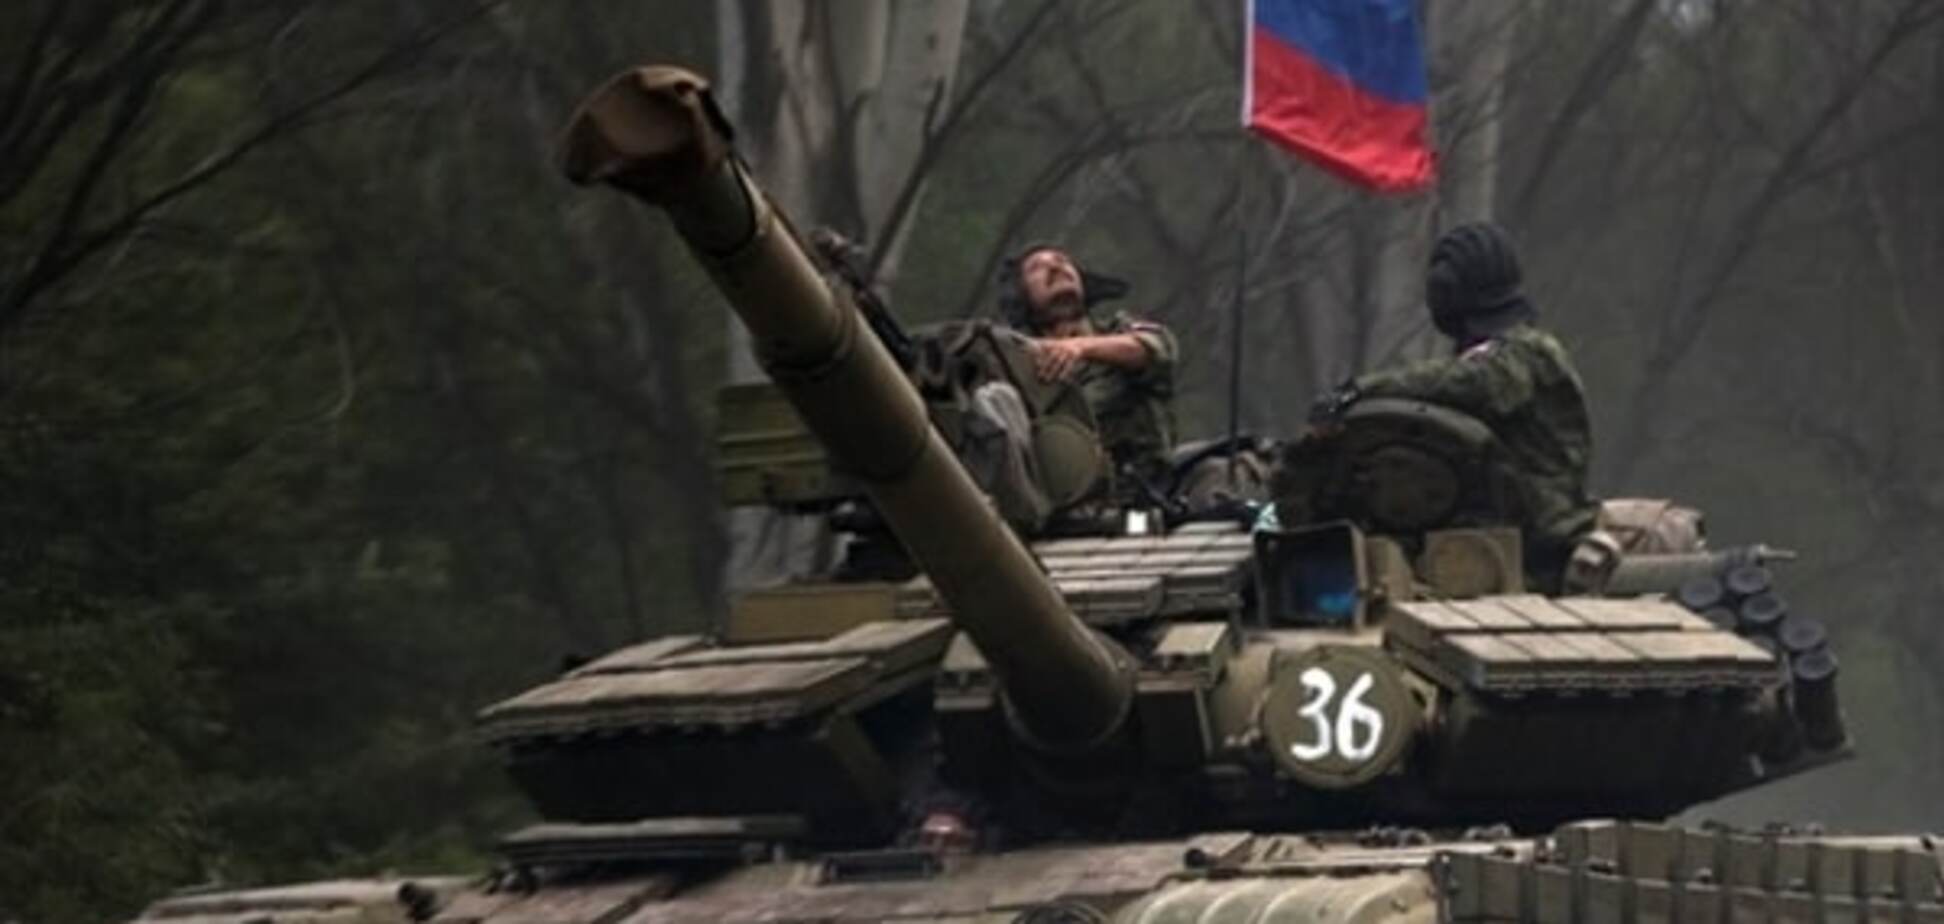 Близьке до Путіна джерело розповіло про присутність російських військ на Донбасі